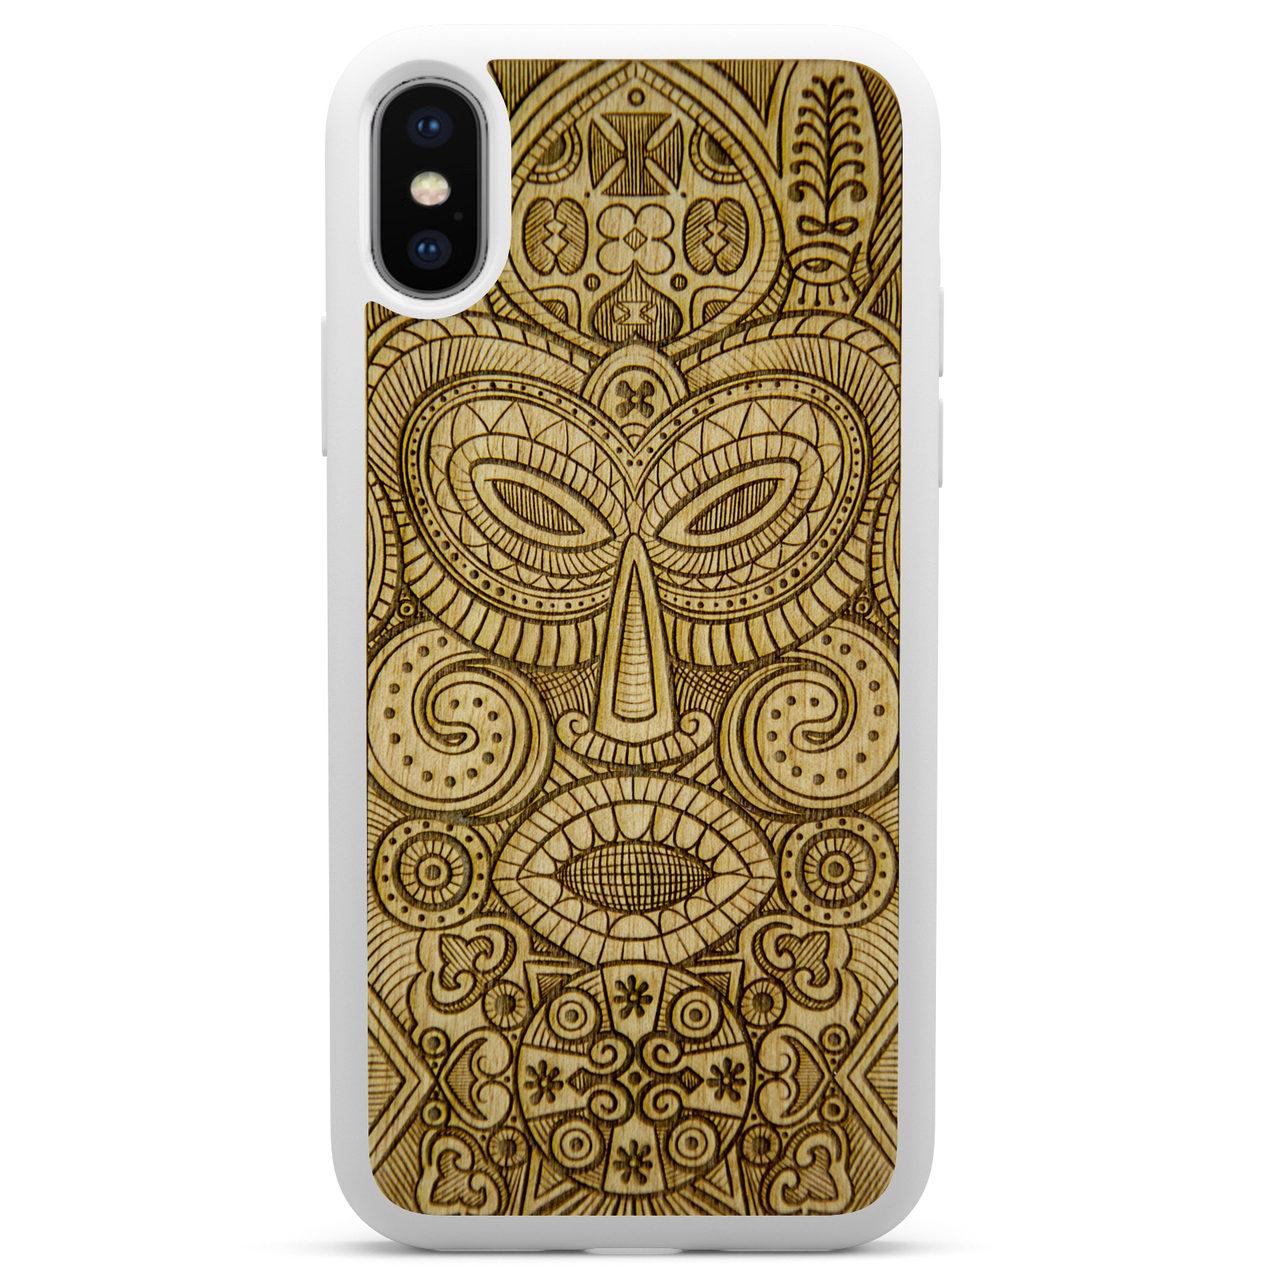 Funda para teléfono de madera blanca con máscara tribal tribal para iPhone X XS